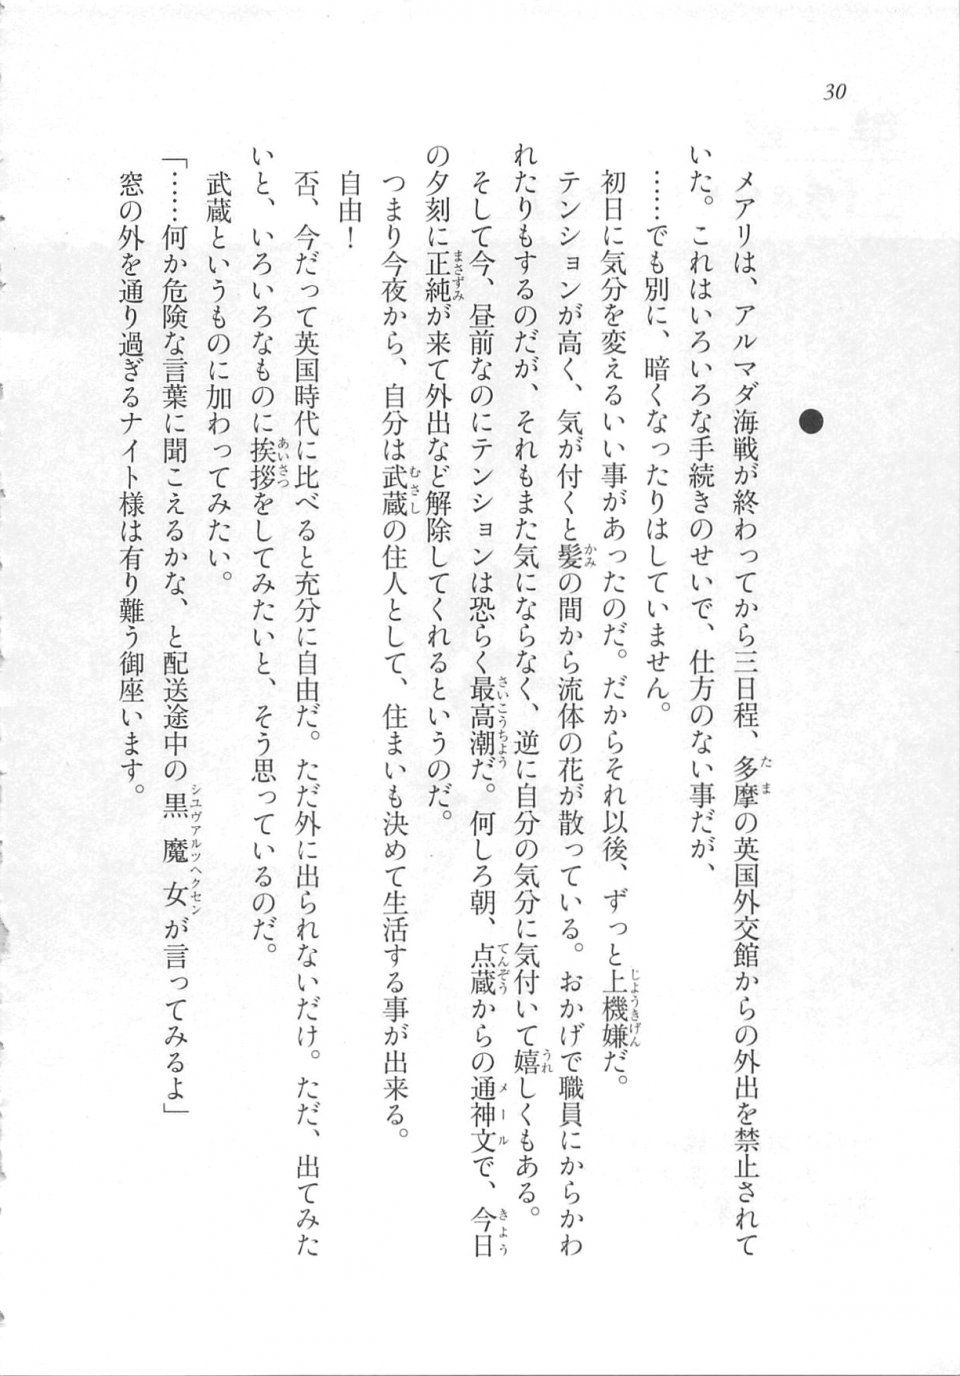 Kyoukai Senjou no Horizon LN Sidestory Vol 3 - Photo #34